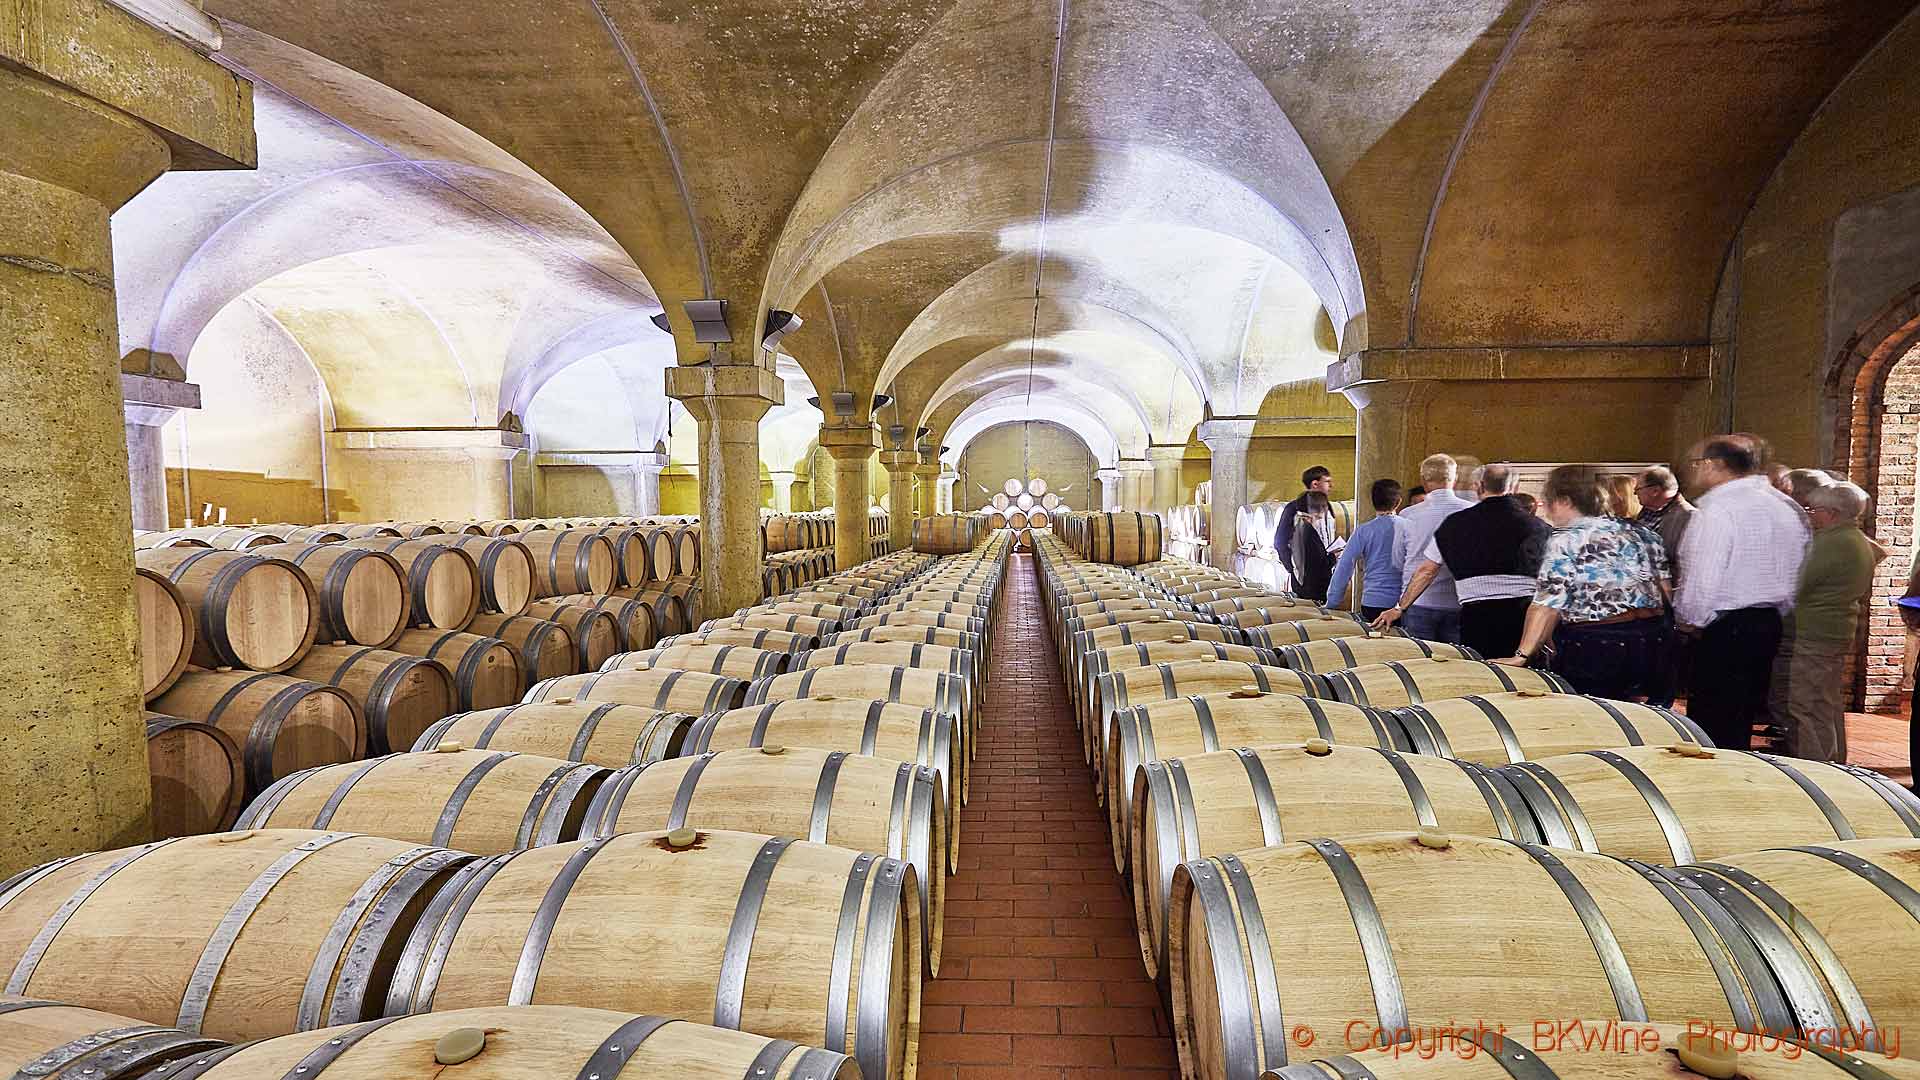 I den eleganta vinkällaren hos en vinproducent i Barbaresco